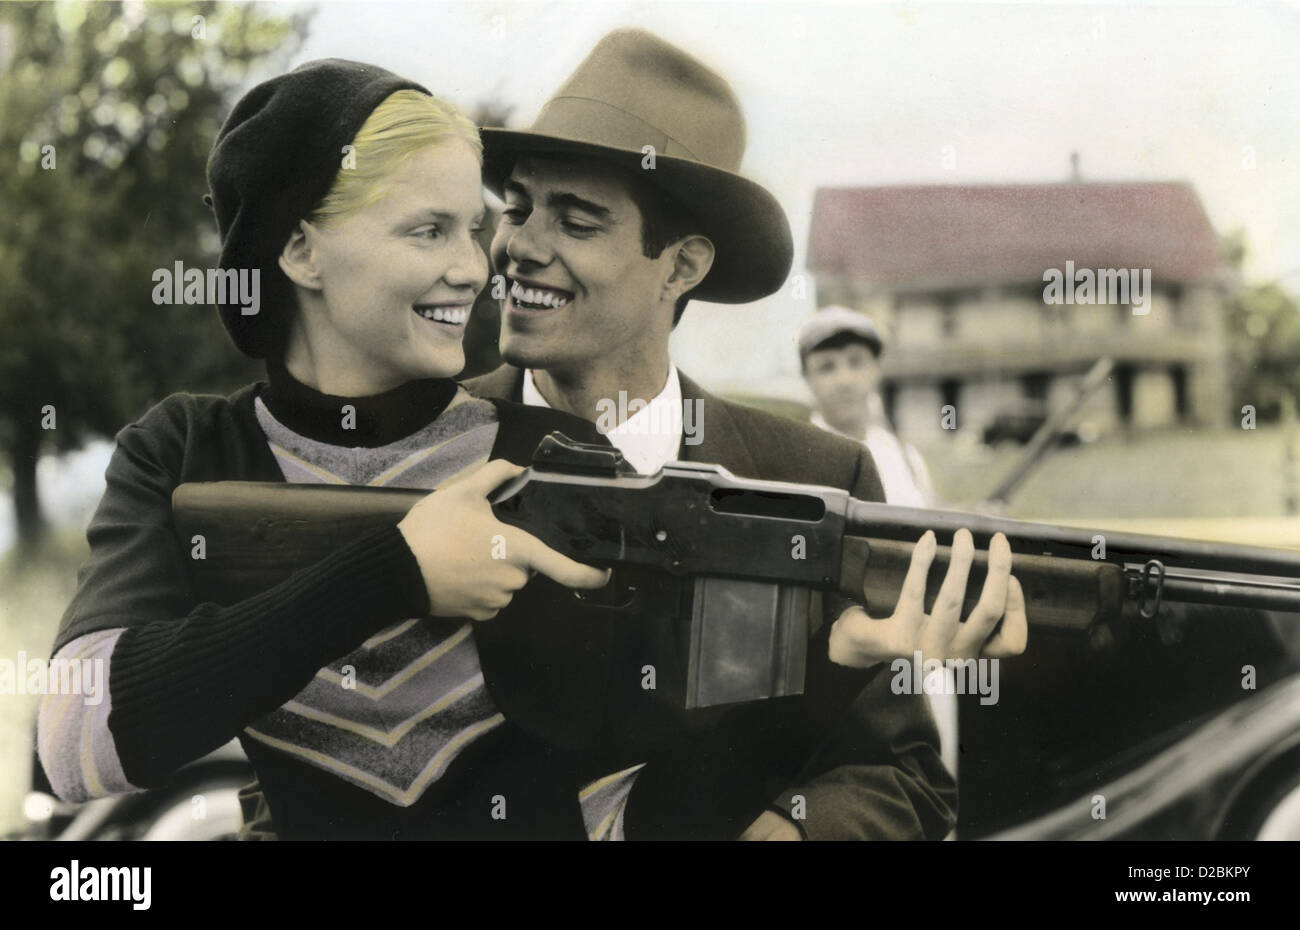 Bonnie Und Clyde - Wie Es Wirklich War Bonnie & Clyde - The True Story  Szenenbild Stock Photo - Alamy